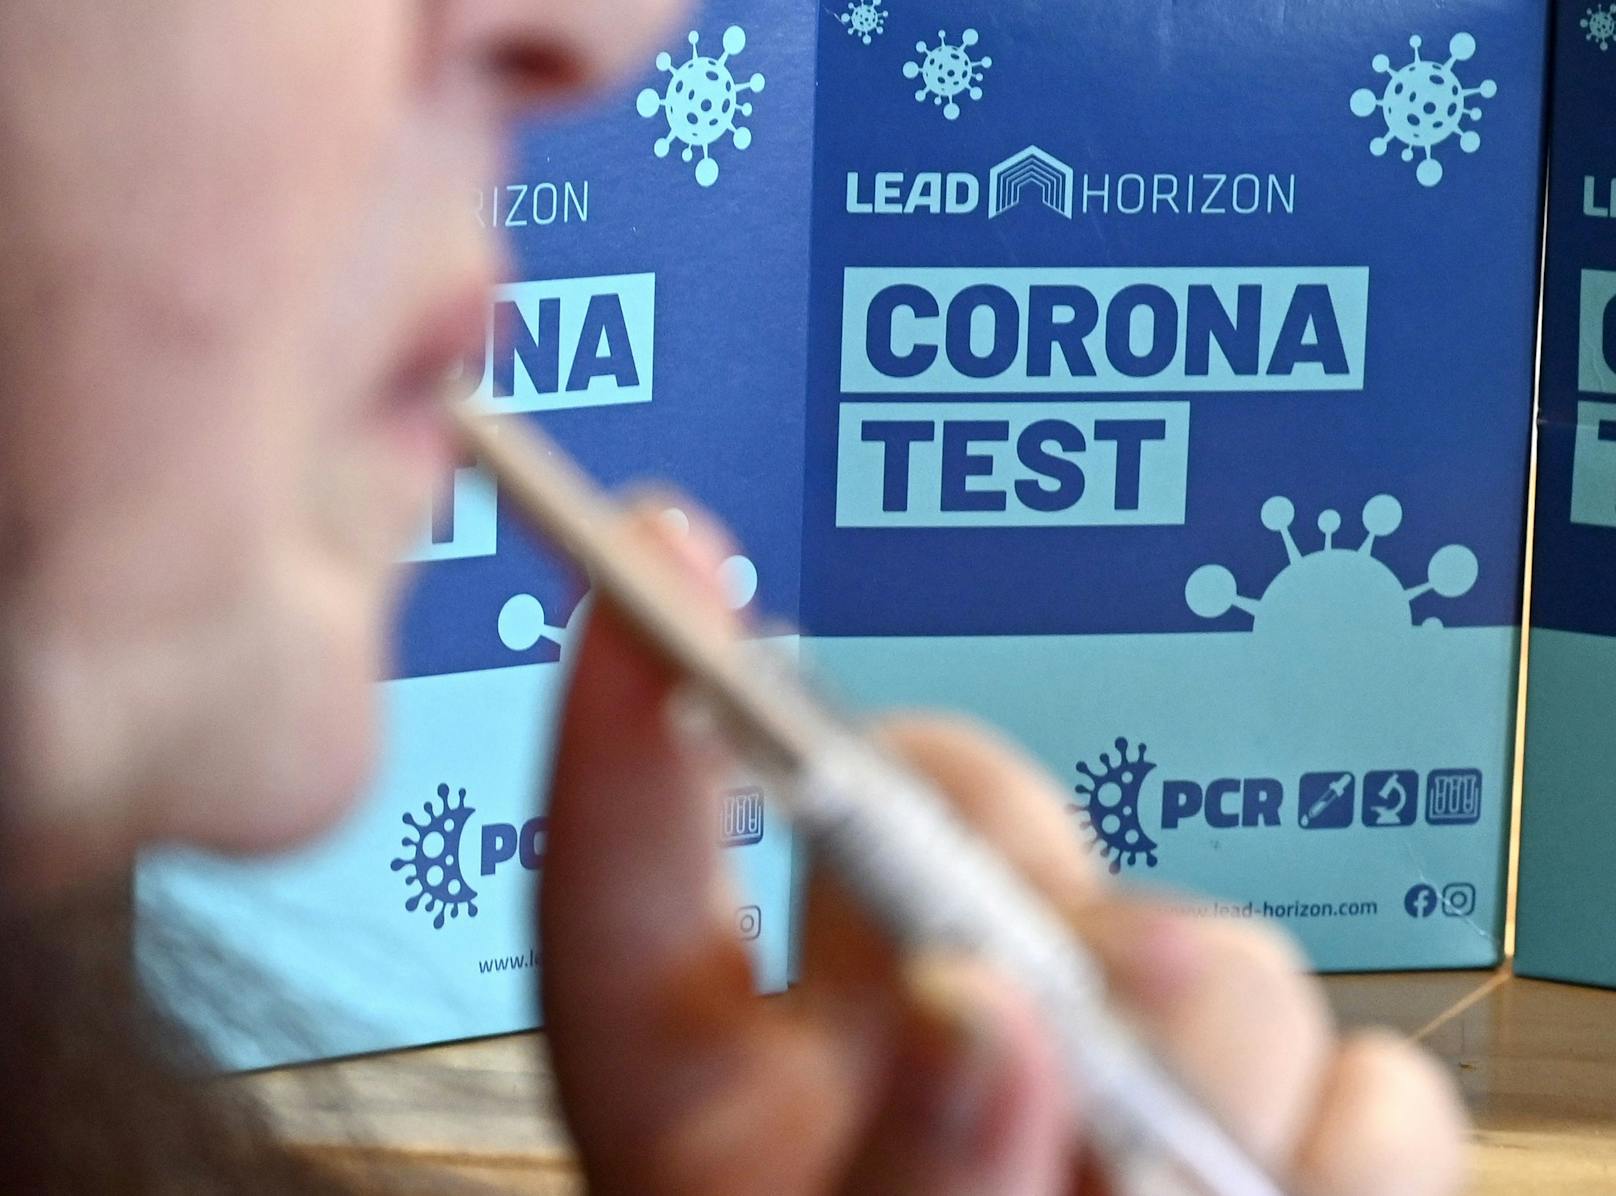 Im Schnitt werden in Wien täglich 308.000 PCR-Tests durchgeführt. Bei "Alles gurgelt" kostet ein Test aufgrund der hohen Stückzahl nur rund 7 Euro.